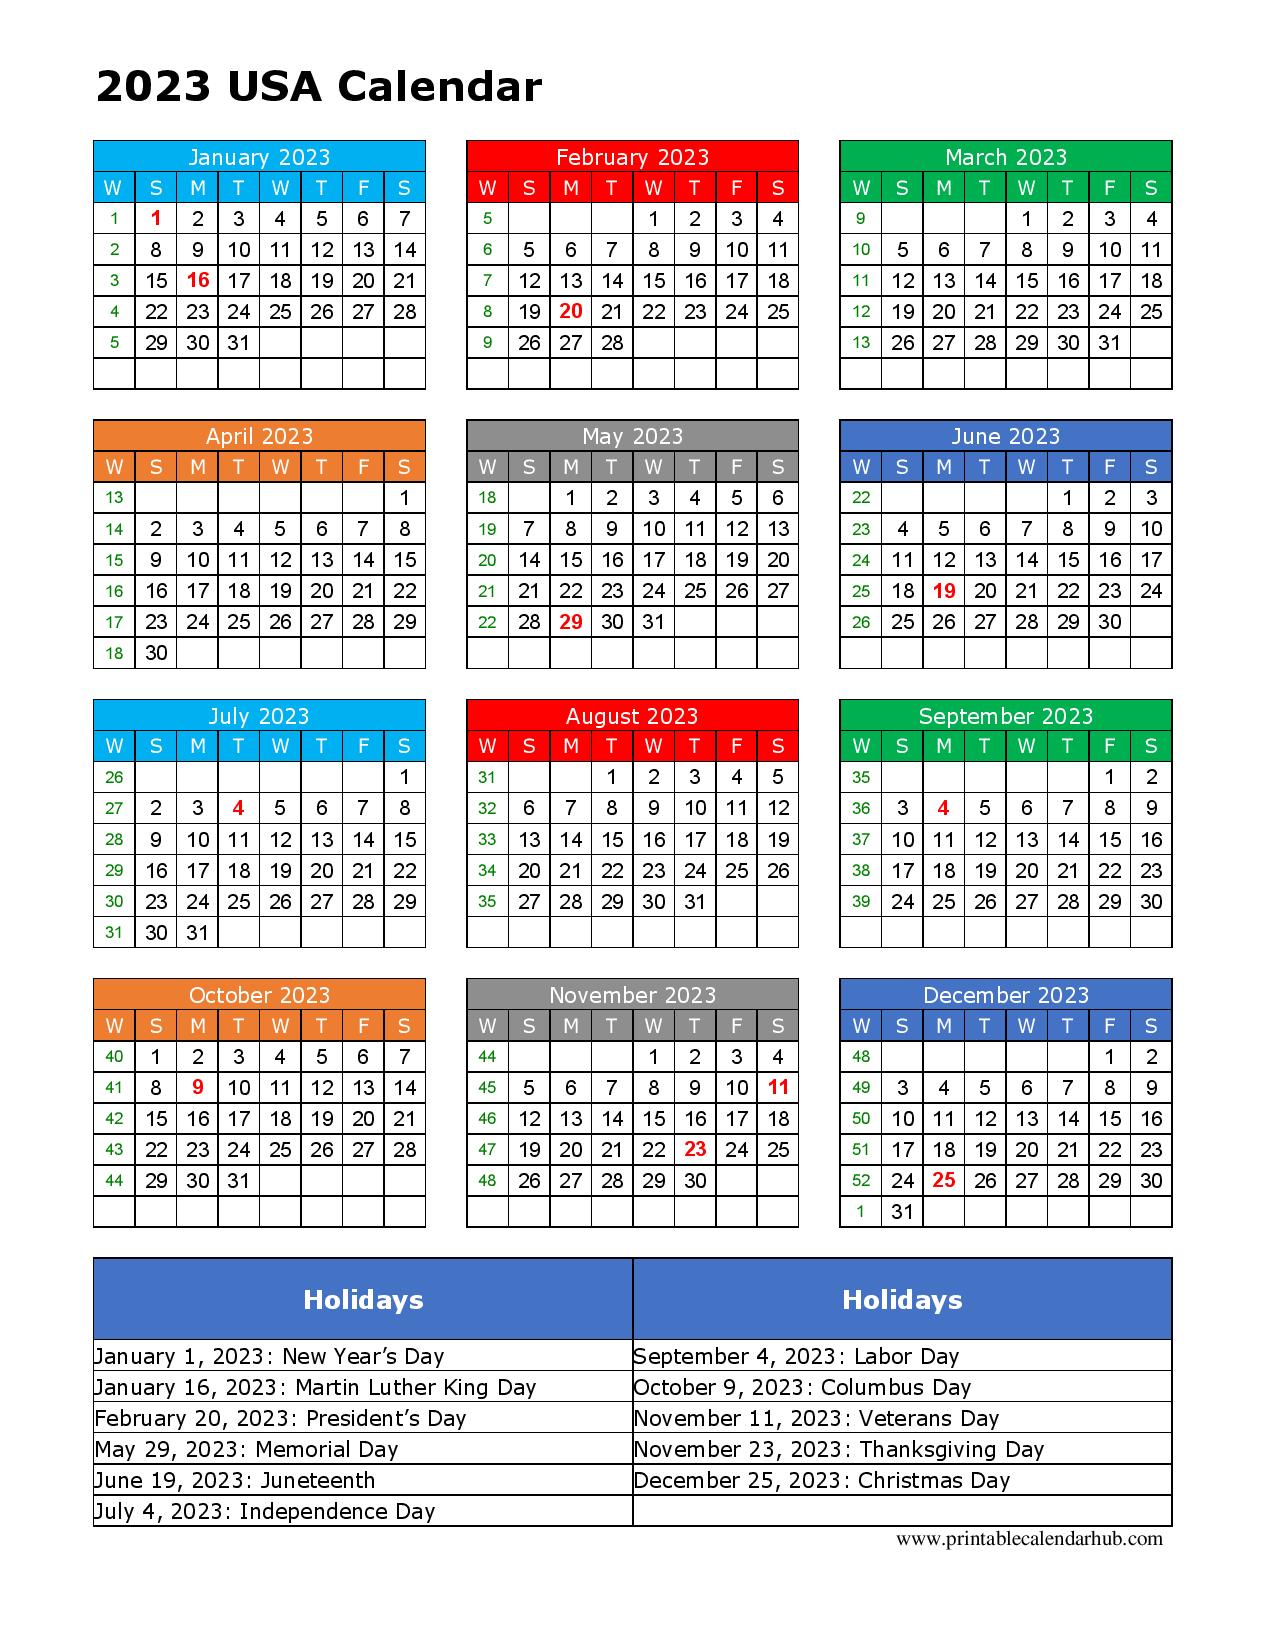 USA 2023 Calendar Holidays